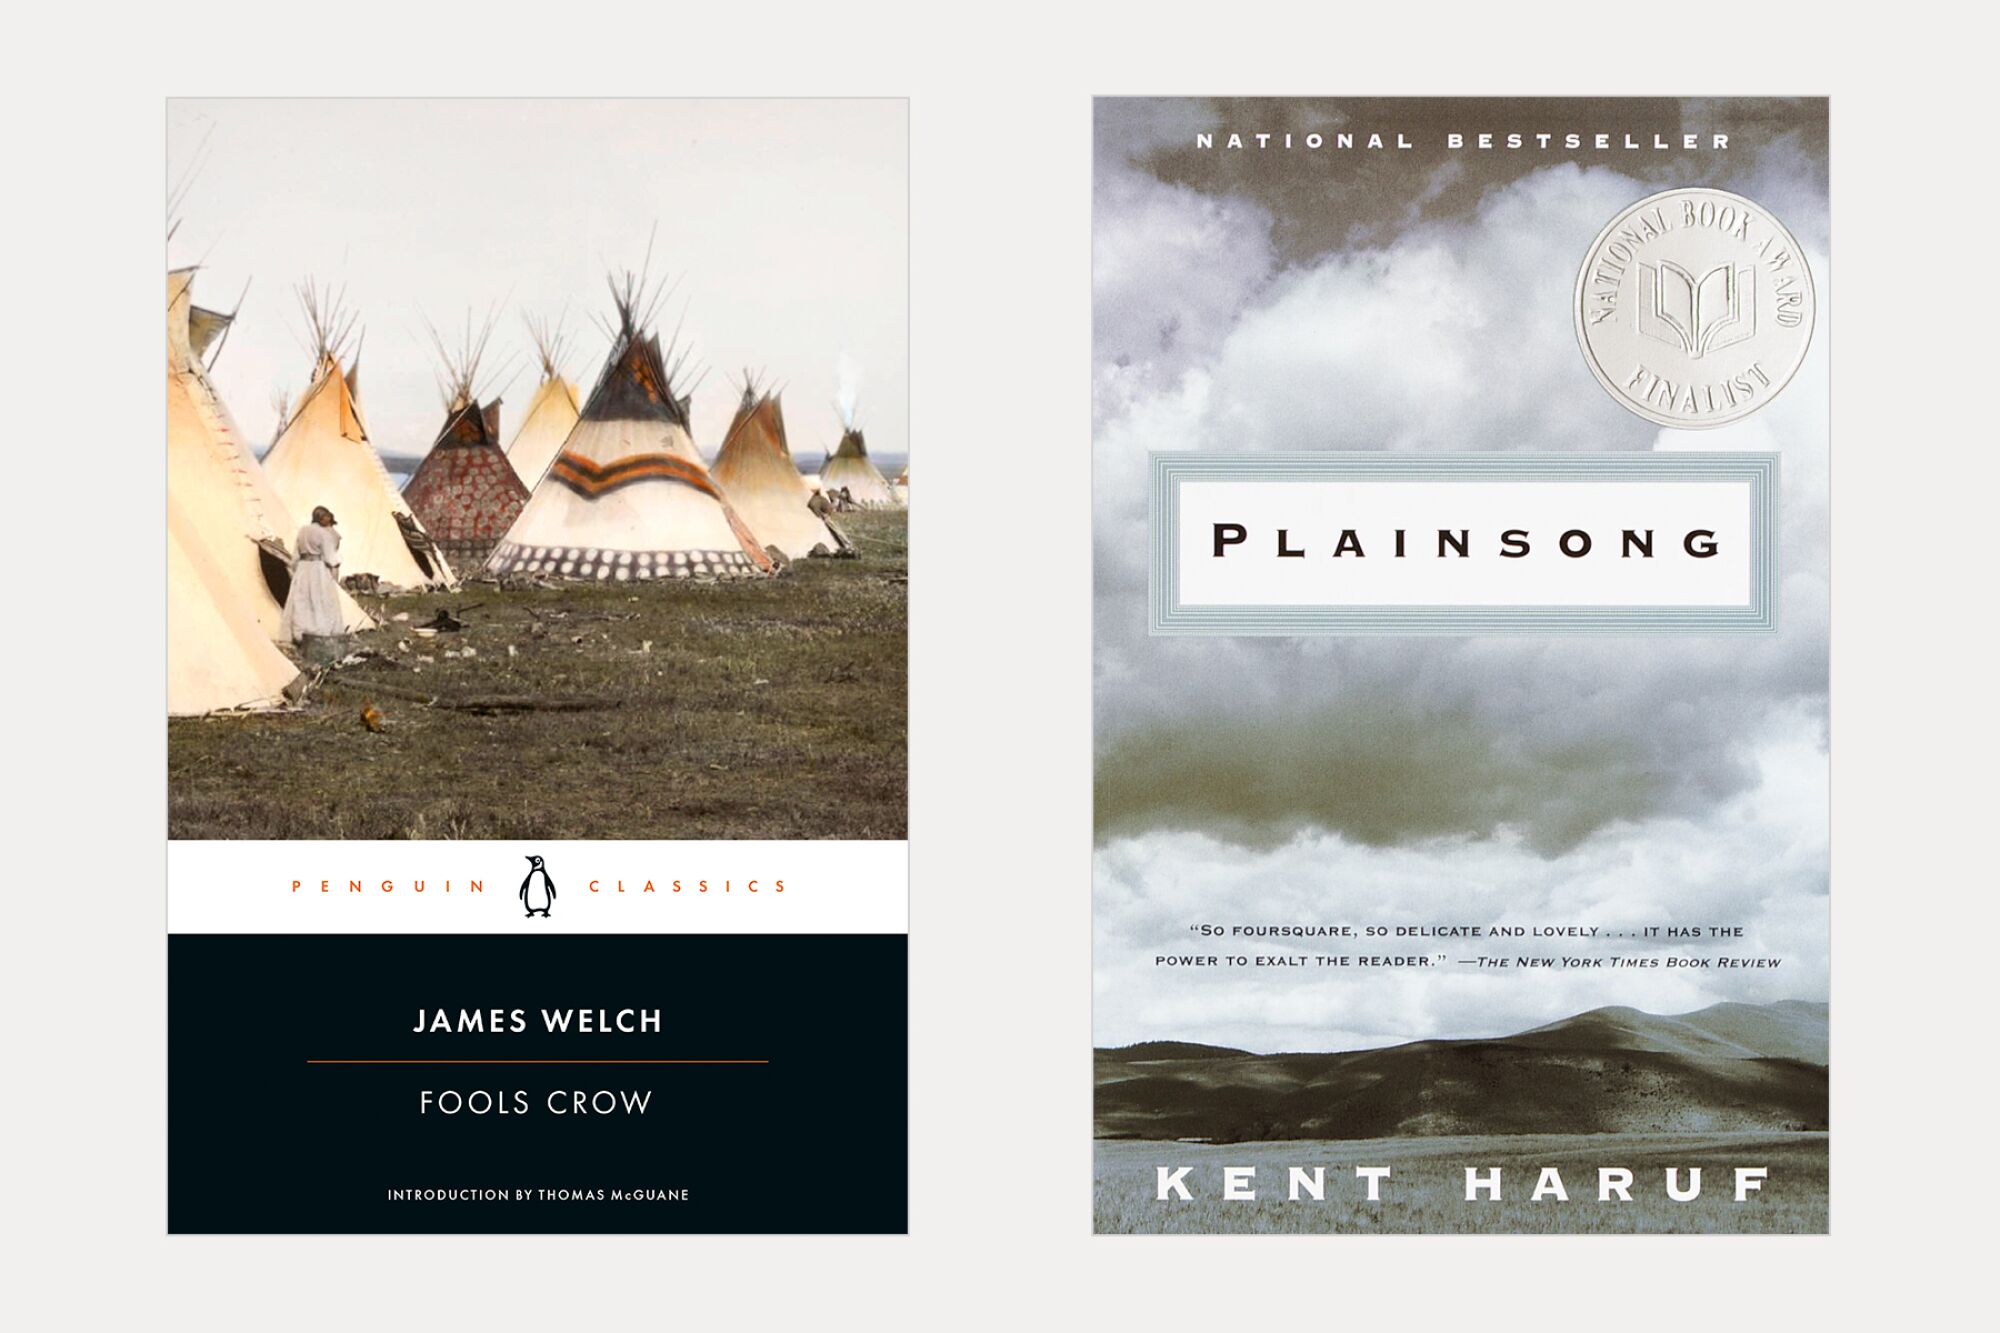 iki kitap kapağı: James Welch'in yazdığı Fools Crow ve Kent Varuf'un Plainsong'u